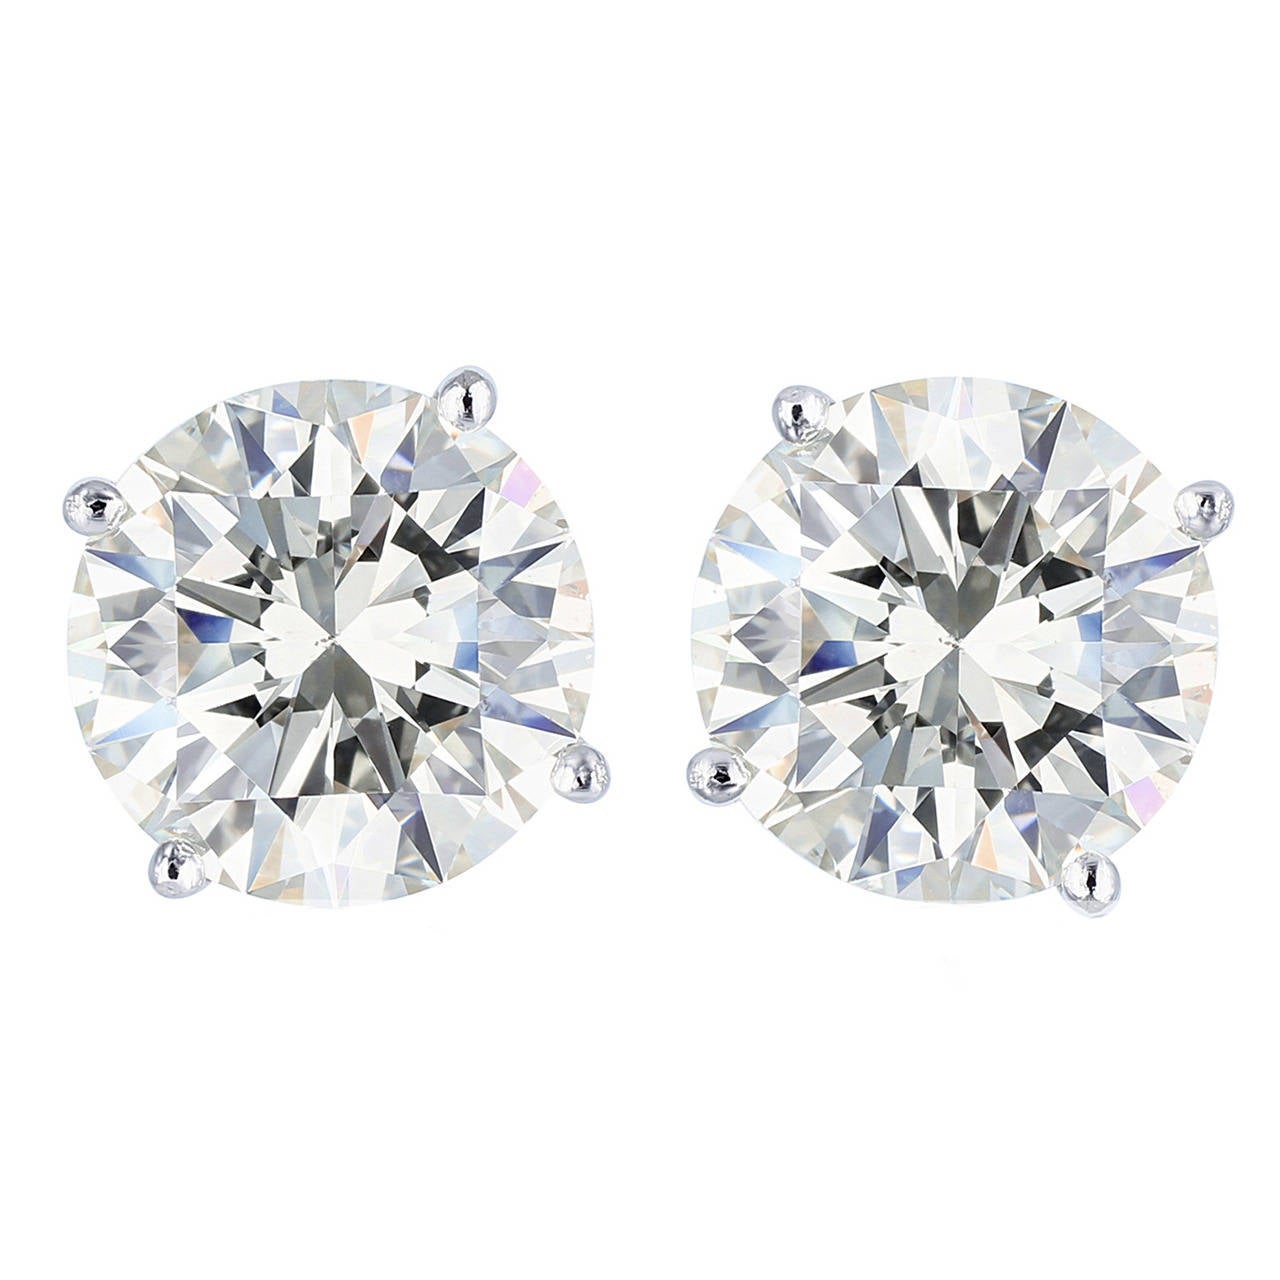 Loose Pair 6.04 Carats D/VS2 Brilliant Cut Diamonds For Sale